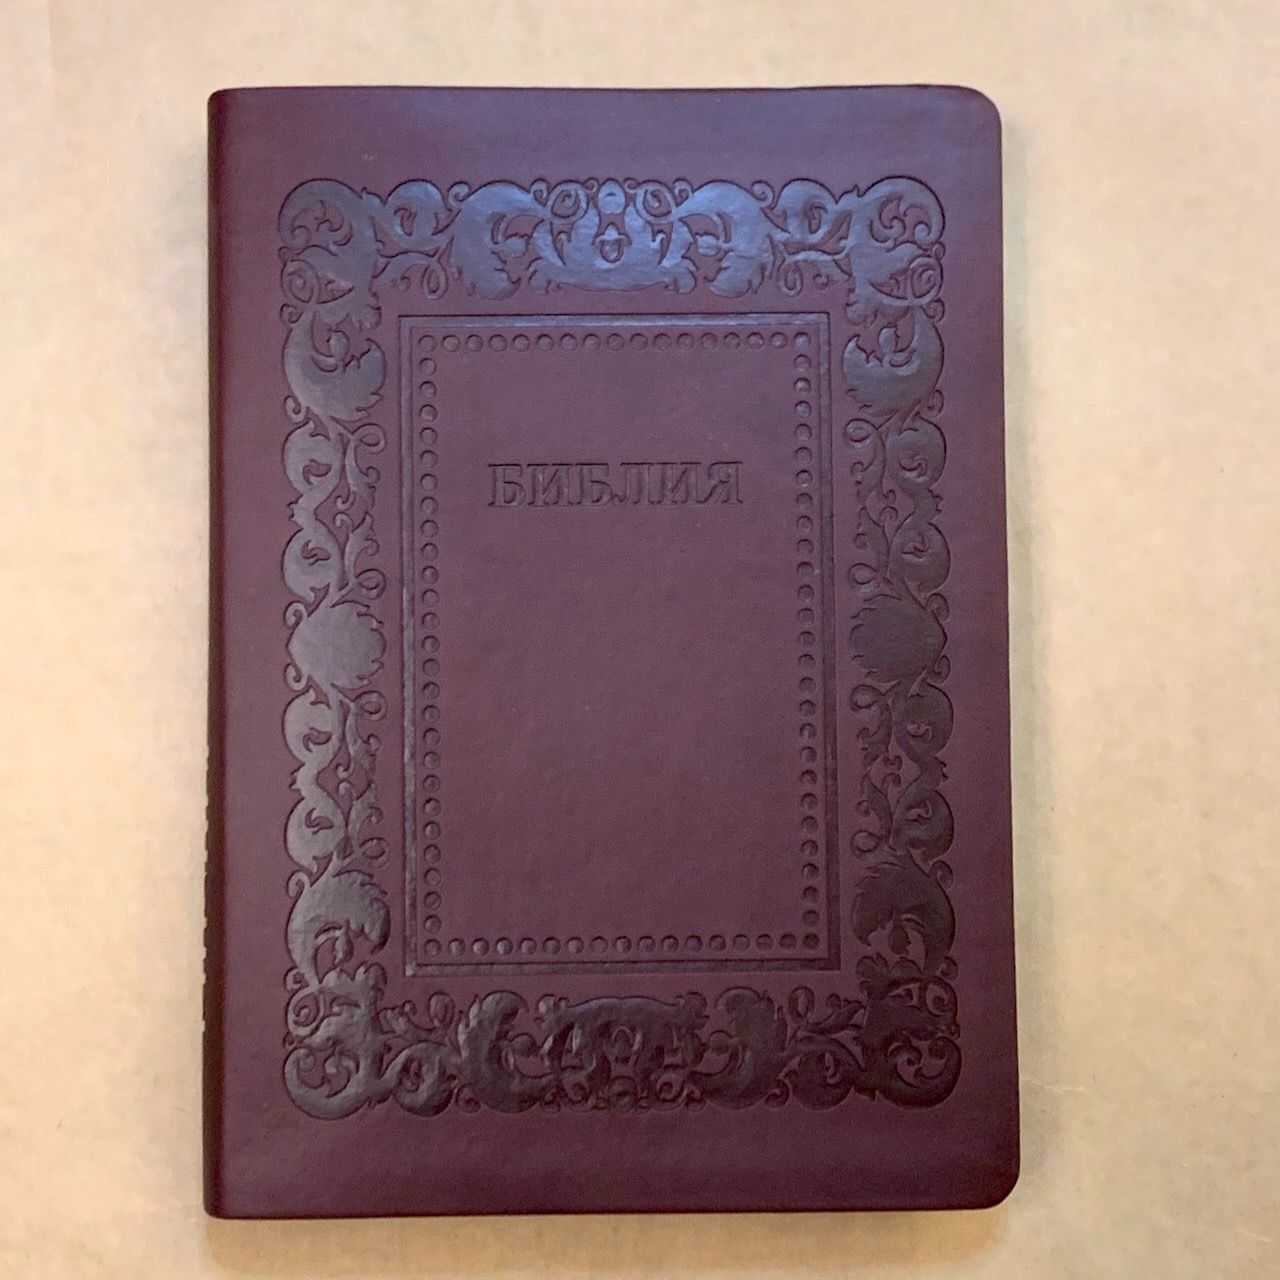 Библия 076 код H2,  дизайн "термо рамка барокко", переплет из искусственной кожи, цвет коричневый с оттенком бордо матовый